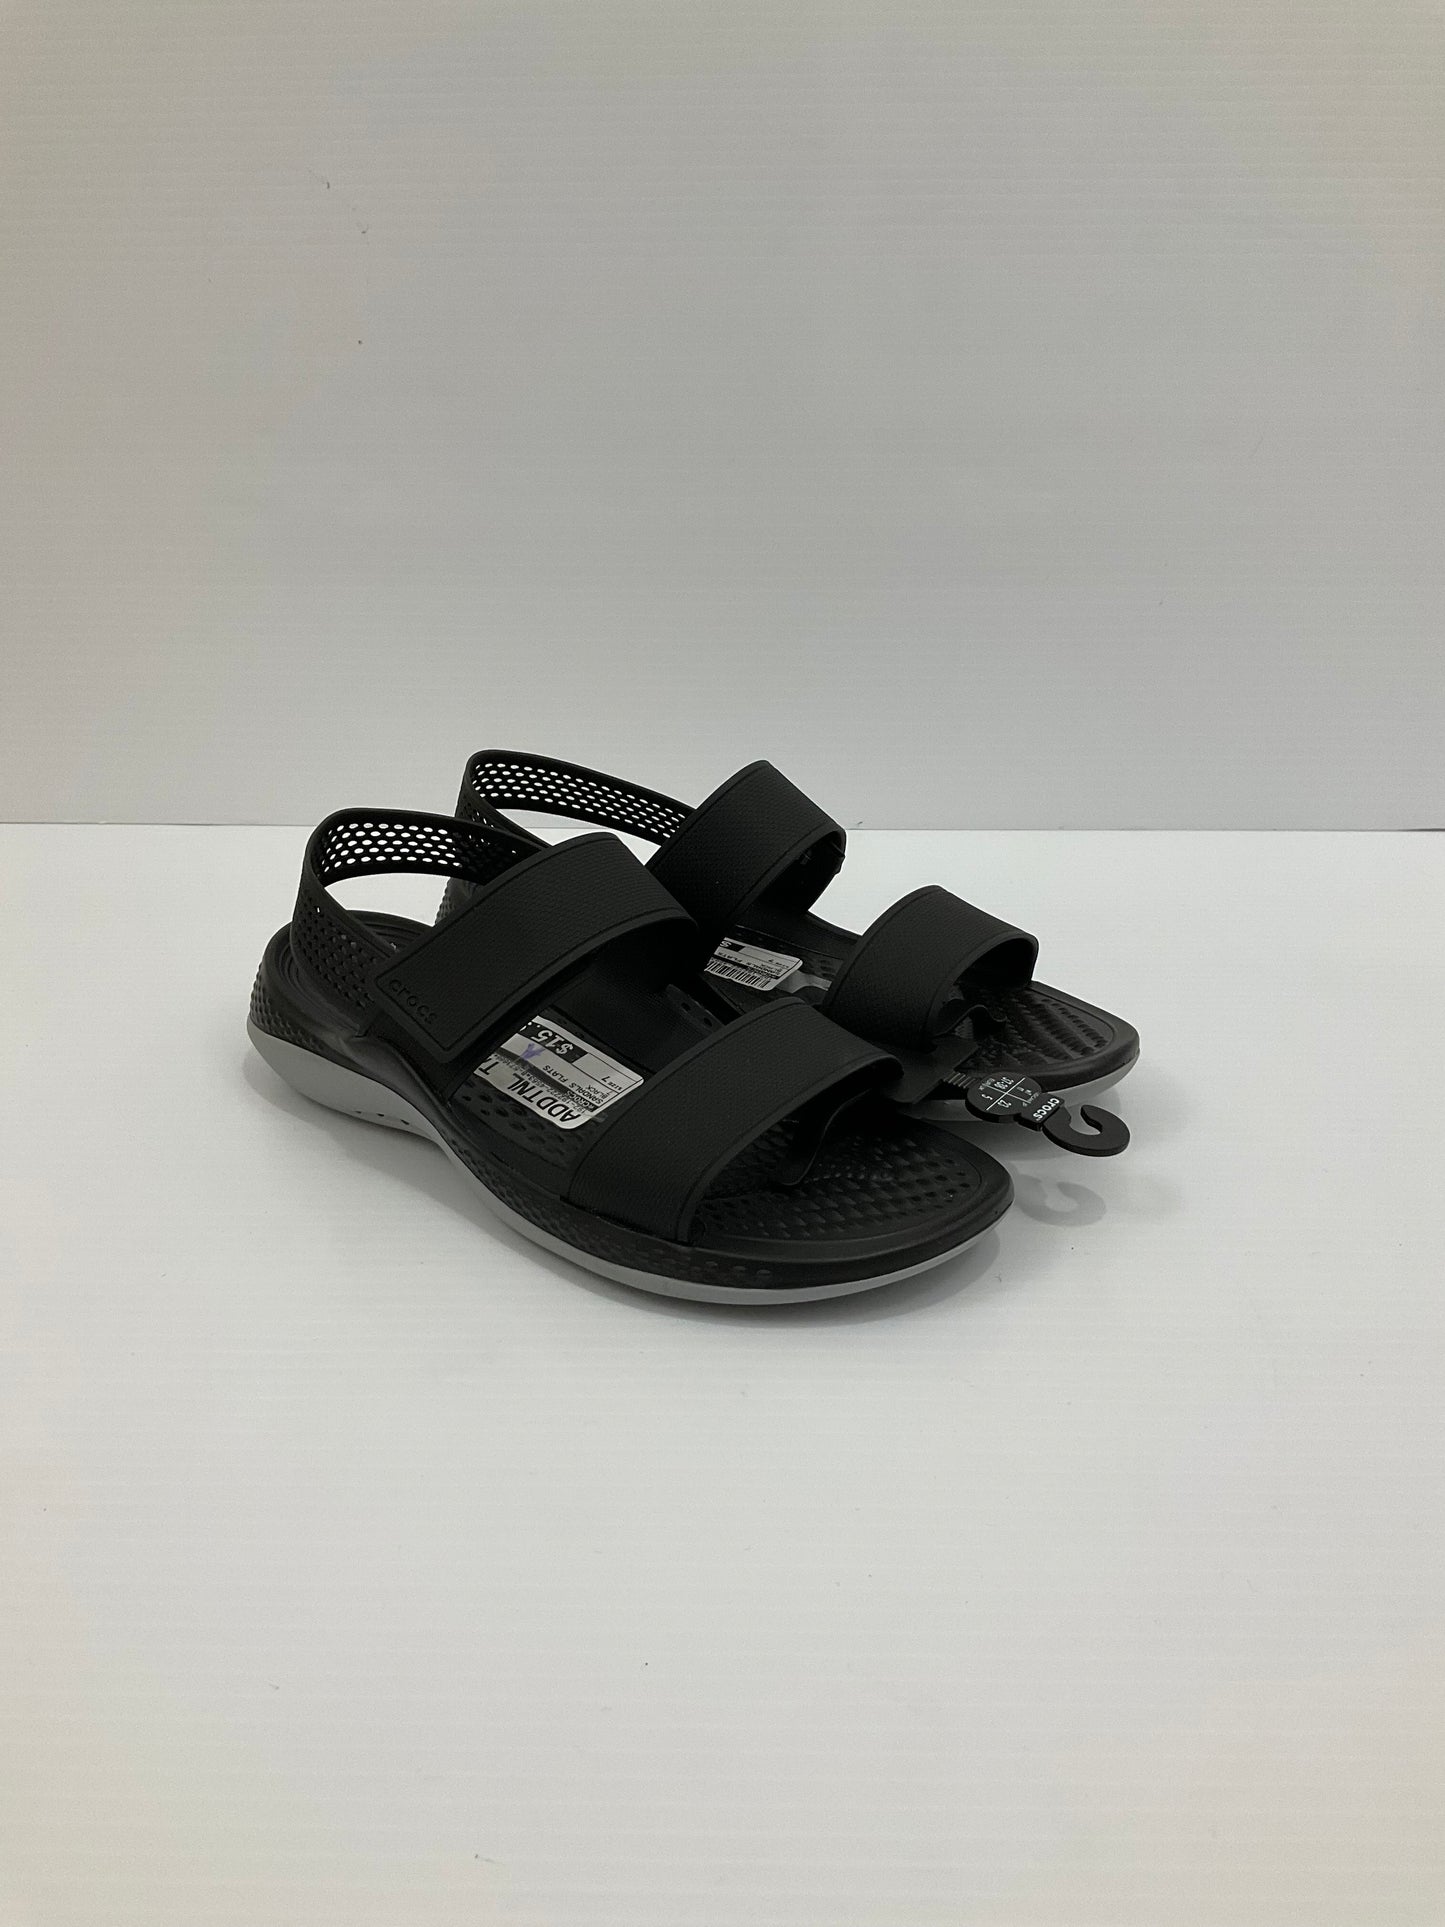 Sandals Flats By Crocs  Size: 7